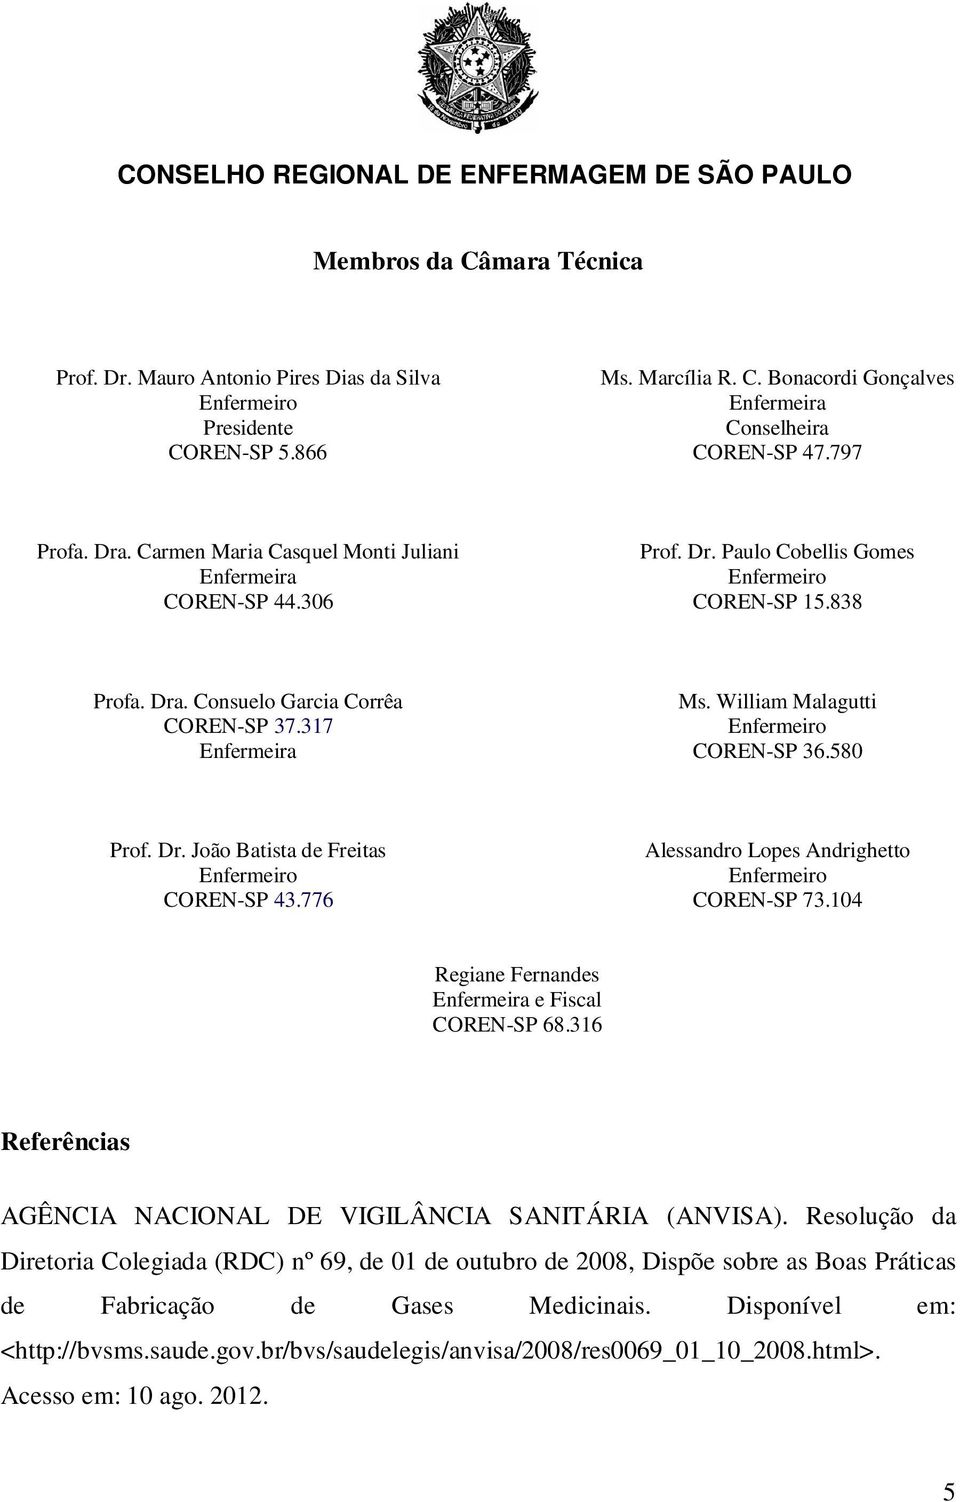 William Malagutti COREN-SP 36.580 Prof. Dr. João Batista de Freitas COREN-SP 43.776 Alessandro Lopes Andrighetto COREN-SP 73.104 Regiane Fernandes Enfermeira e Fiscal COREN-SP 68.